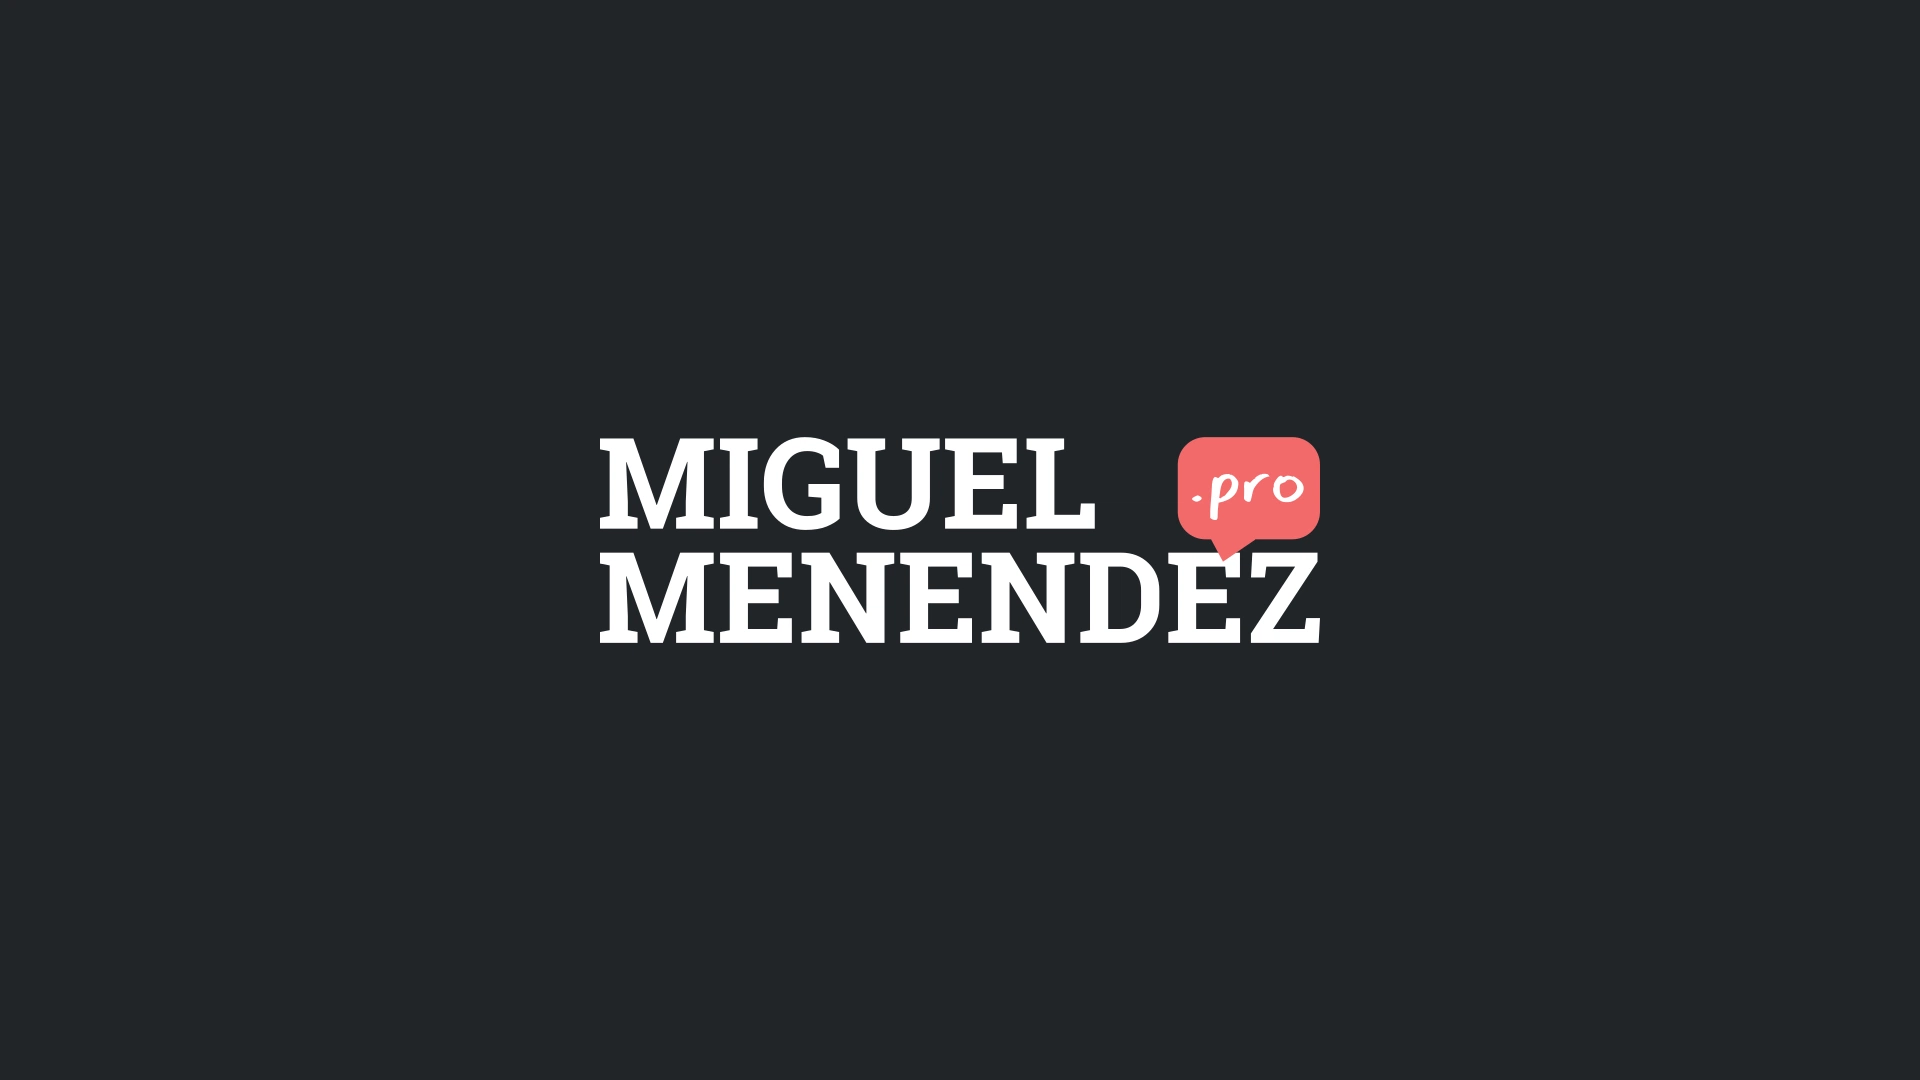 (c) Miguelmenendez.pro